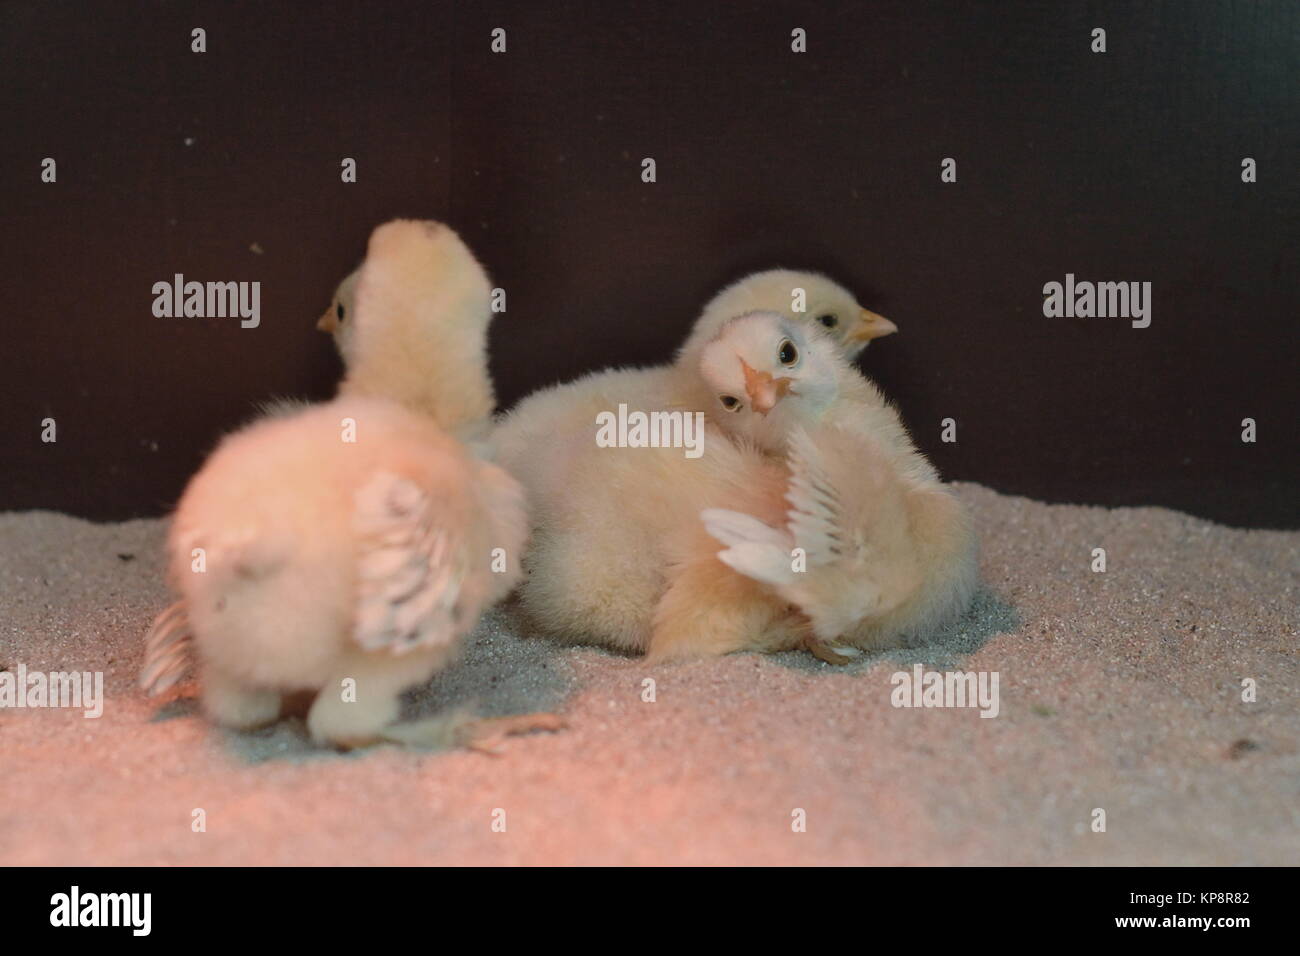 Gruppe aus drei neugeborenen KÃ¼ken auf sabbia unter Infrarotlampe Foto Stock